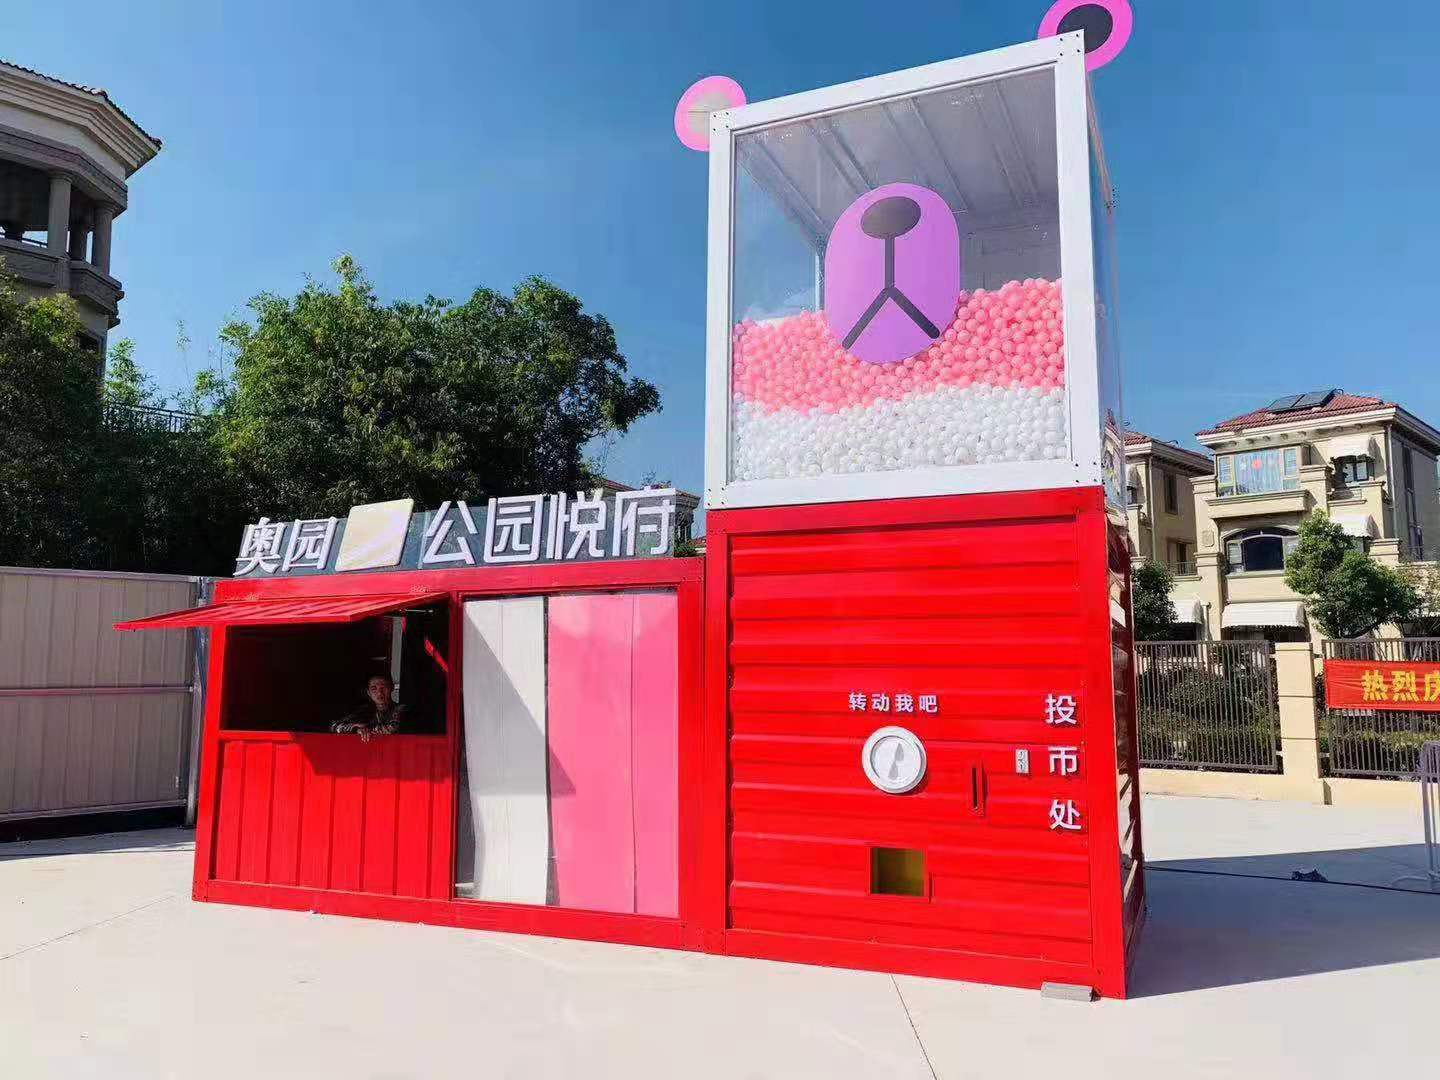 上海市大型扭蛋机出租 暖场互动策划道具厂家大型扭蛋机出租 暖场互动策划道具 庆典活动出租出售